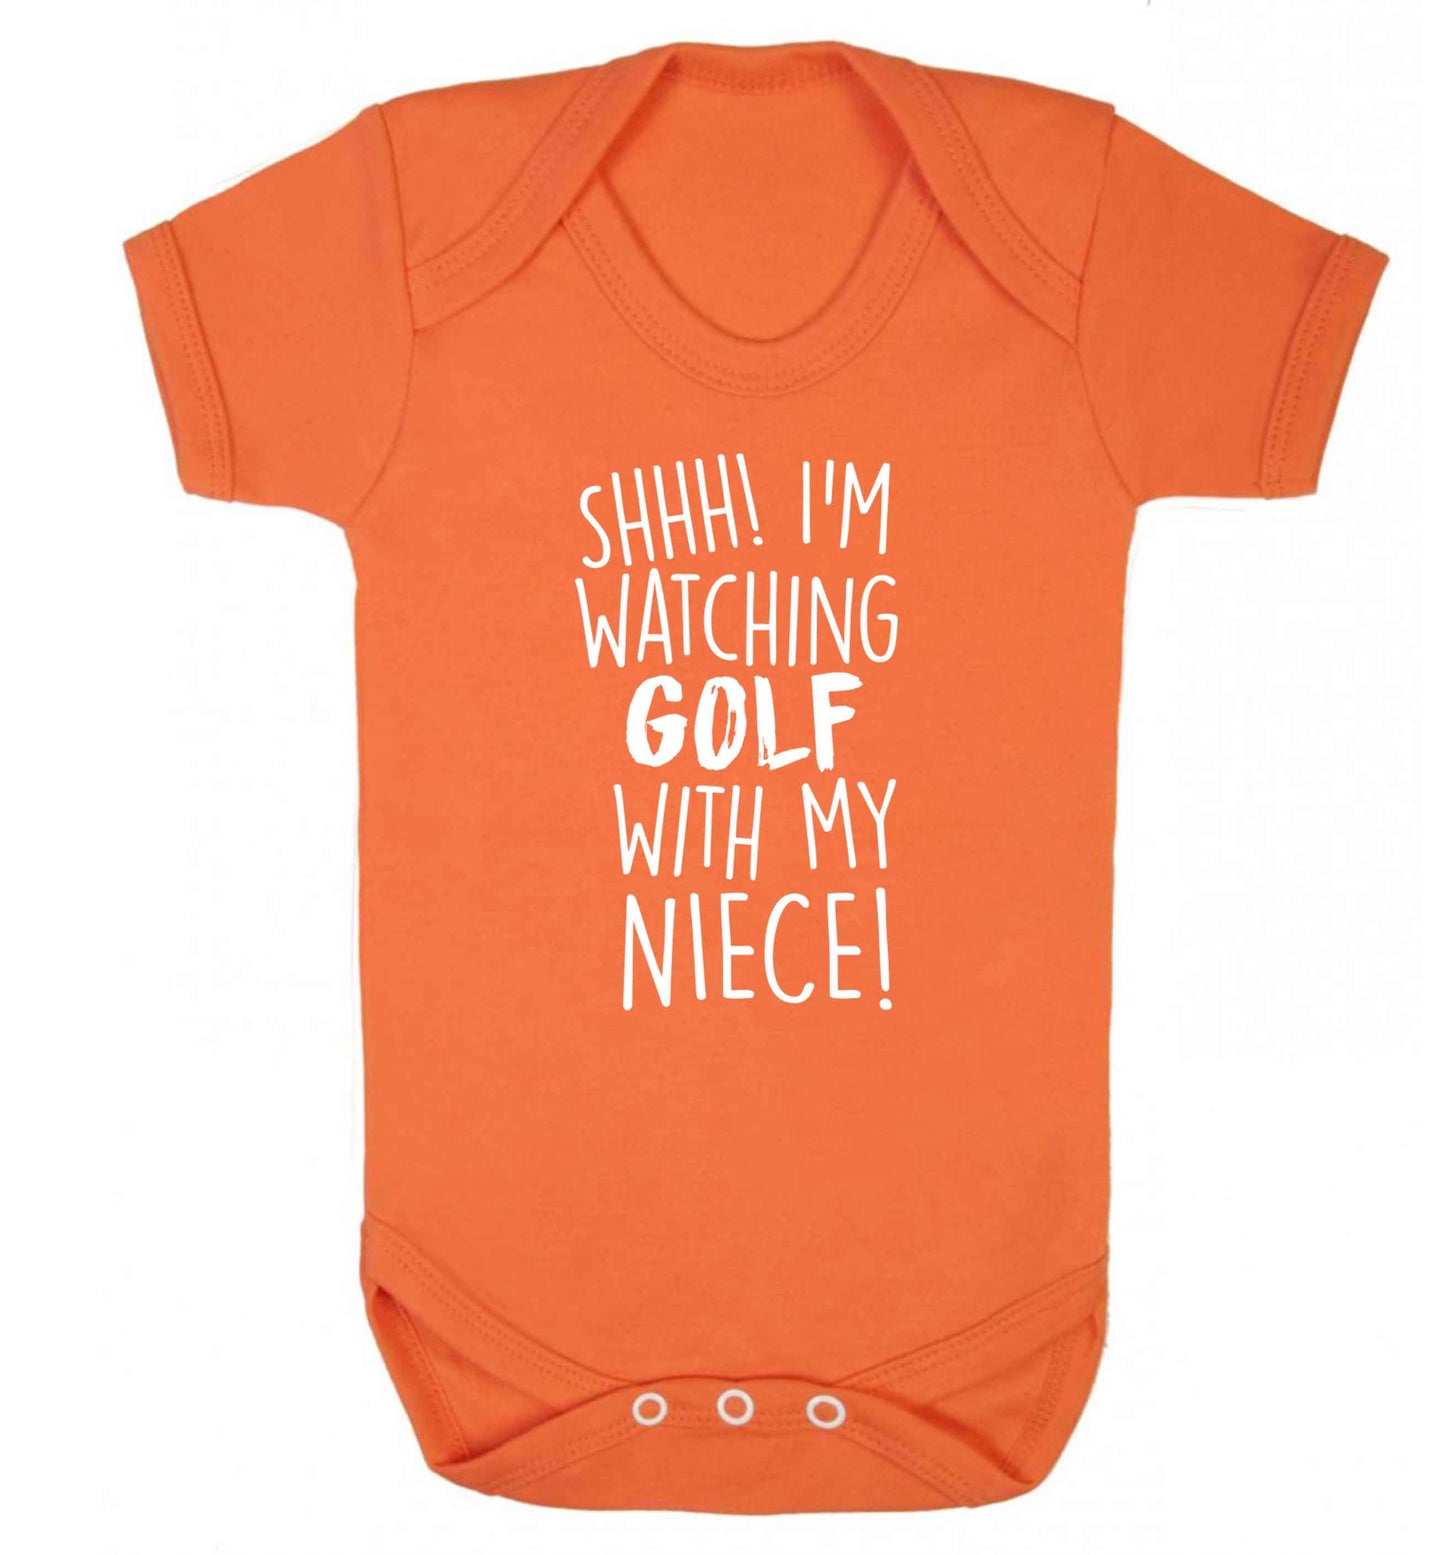 Shh I'm watching golf with my niece Baby Vest orange 18-24 months